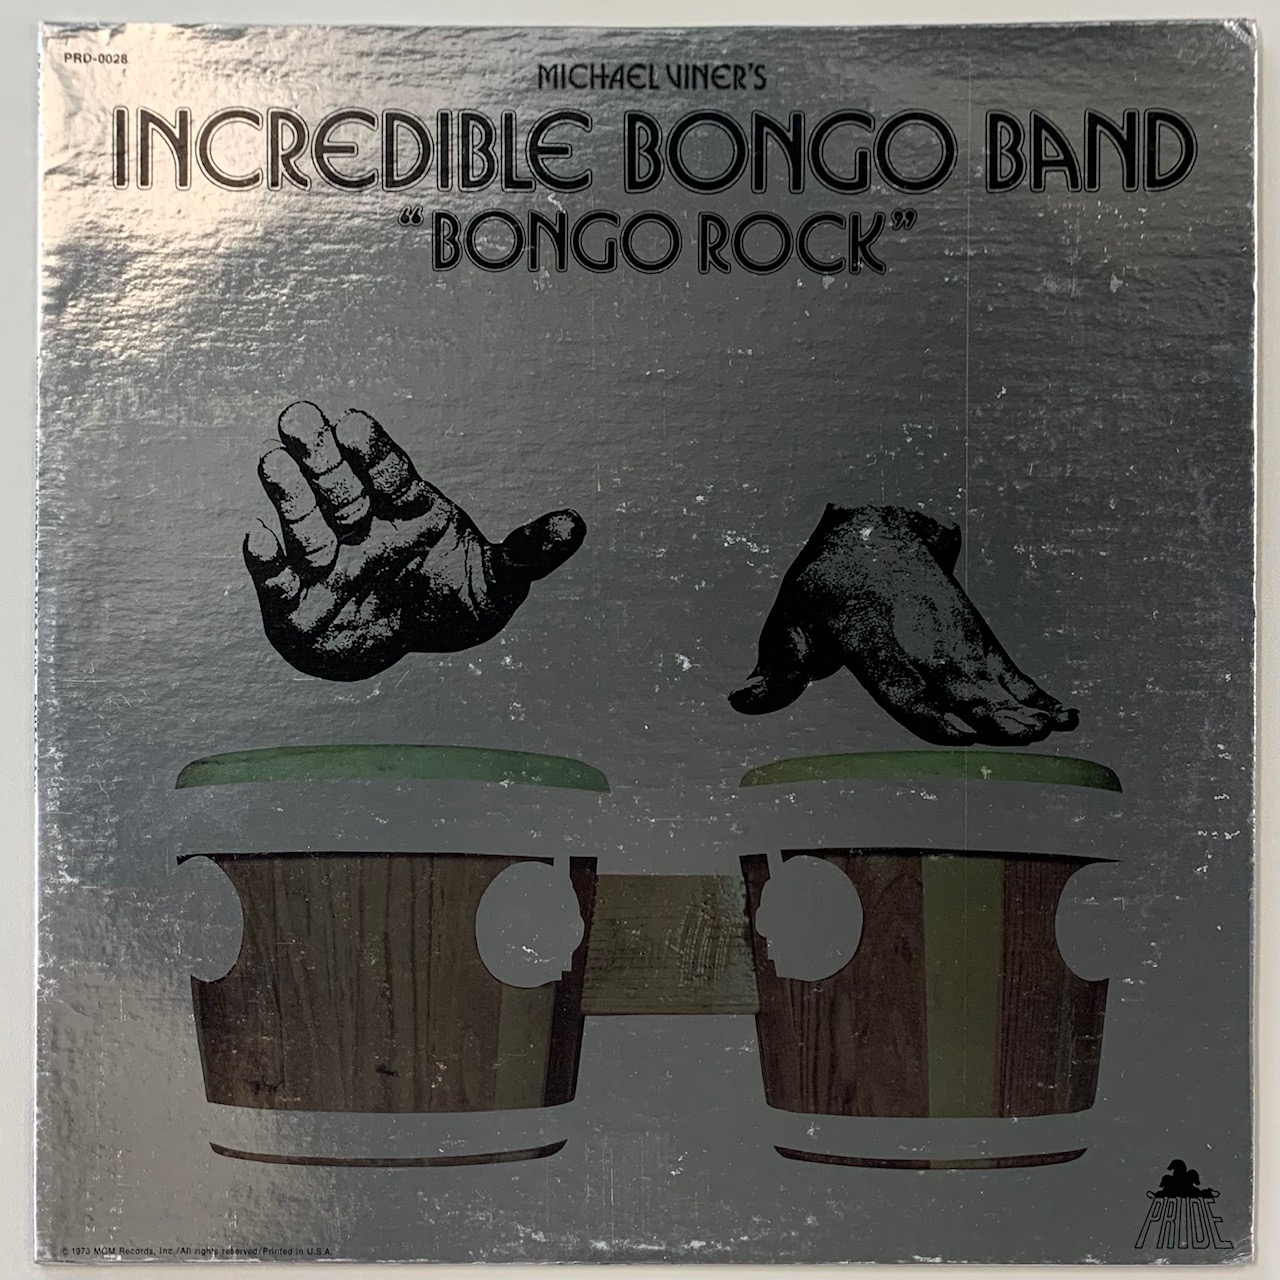 INCREDIBLE BONGO BAND / BONGO ROCK